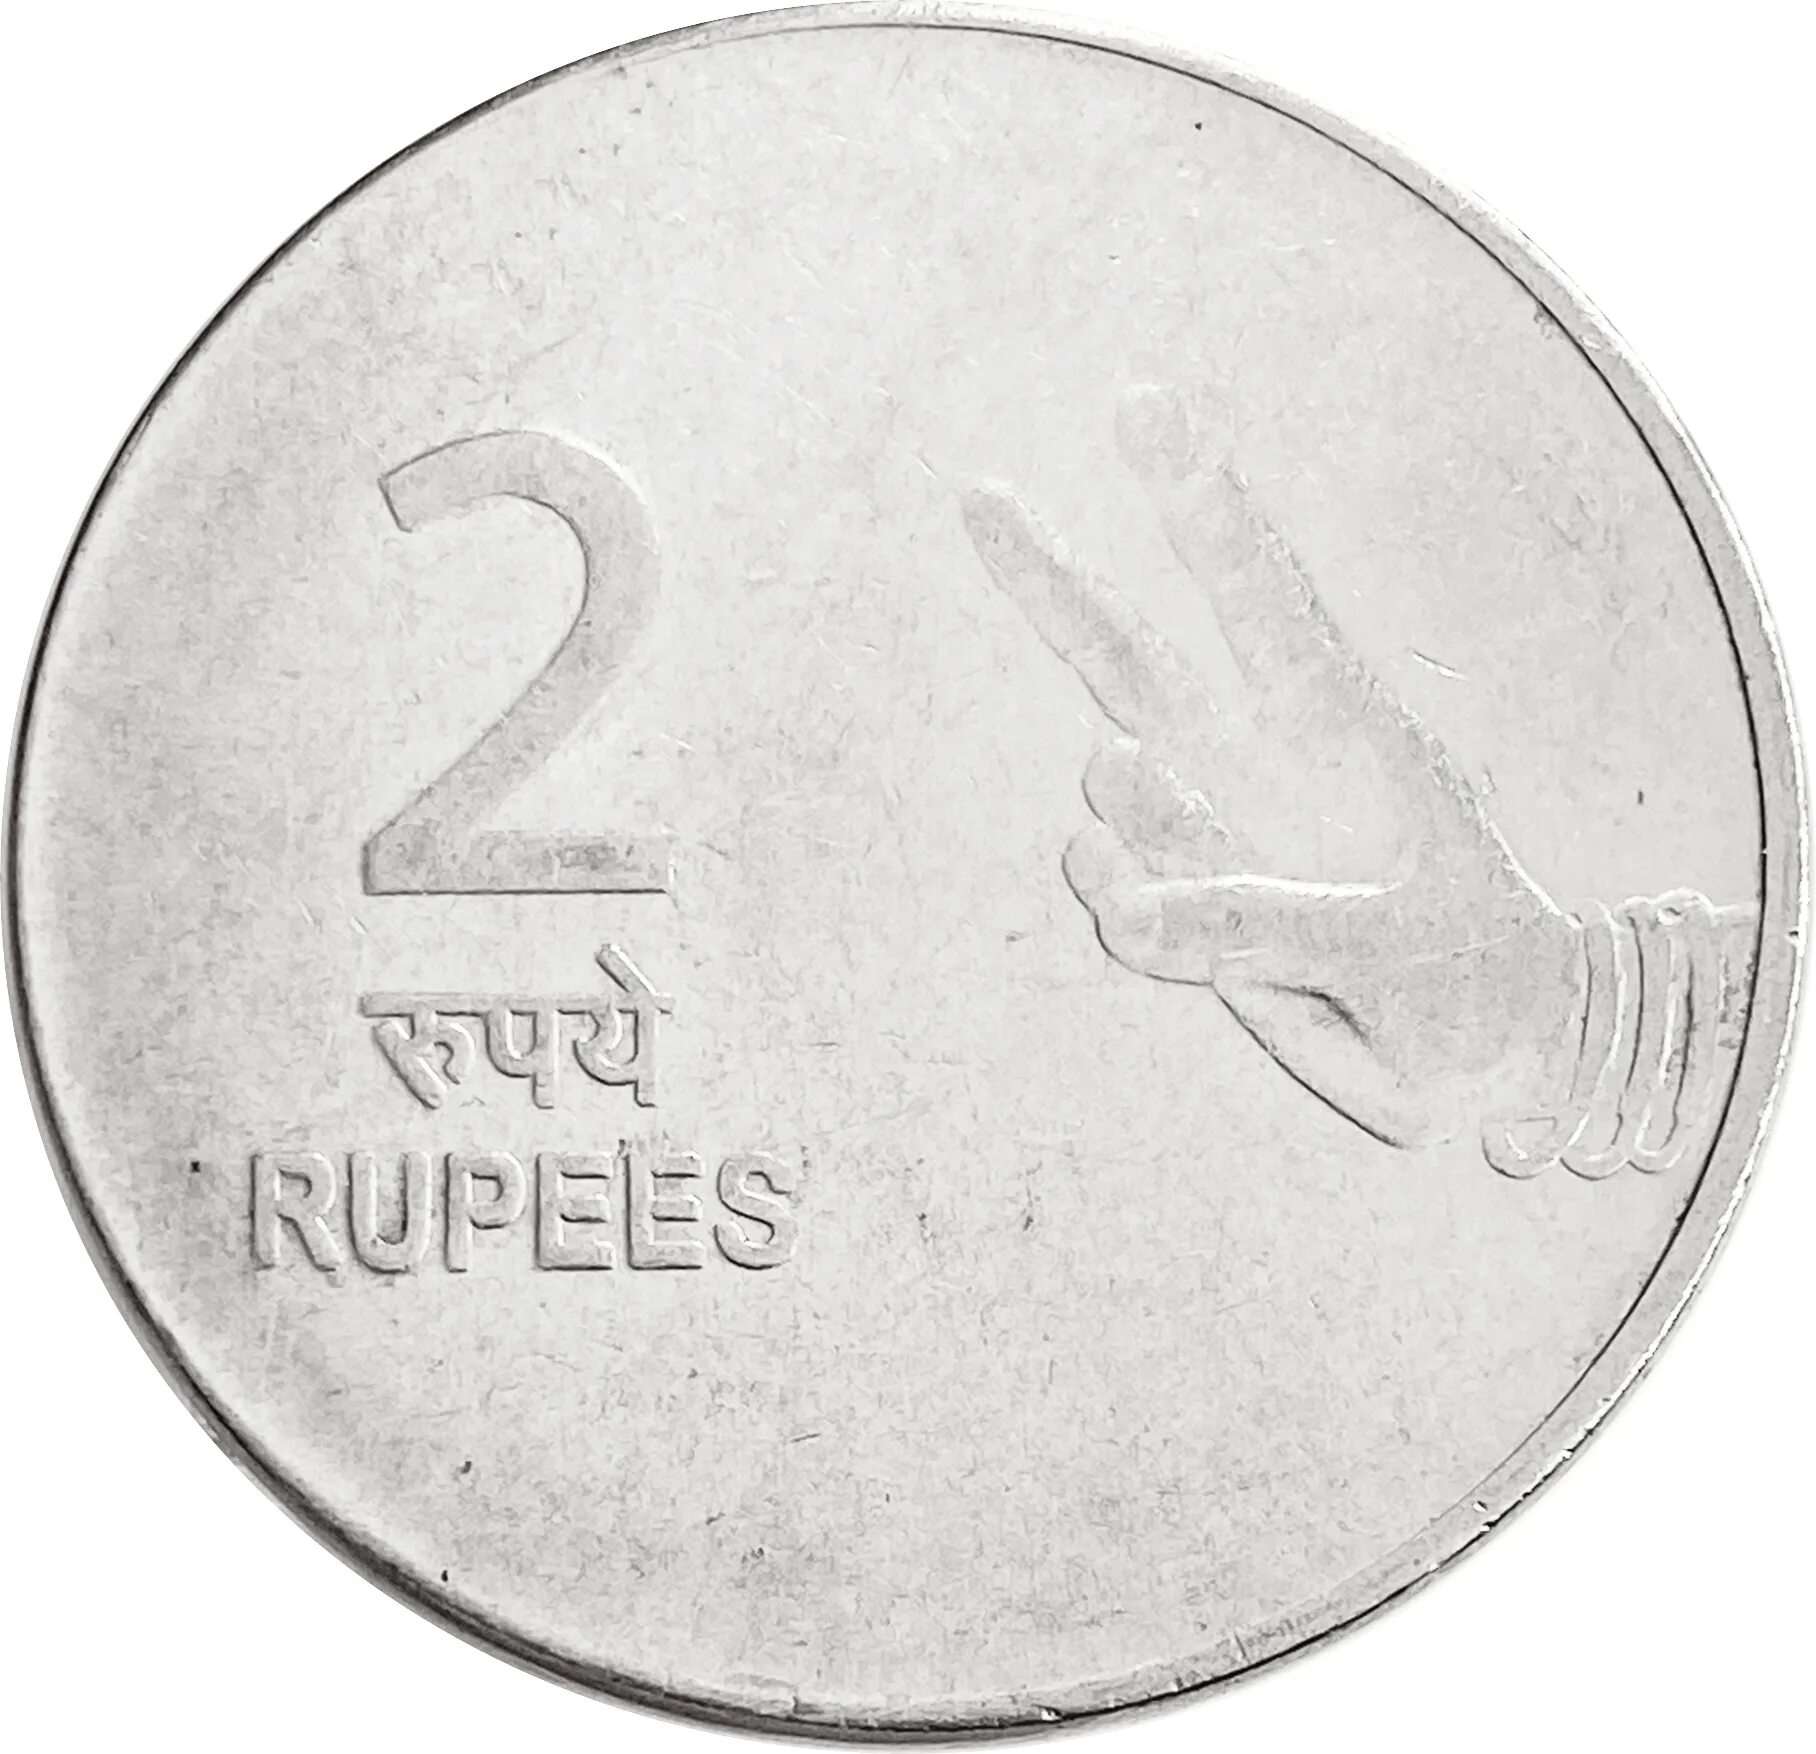 Млн рупий в рублях. 2 Рупии монета. 2 Рупии в рублях. Монета 2 рупия Индия 2007 г. 3 Рупии.